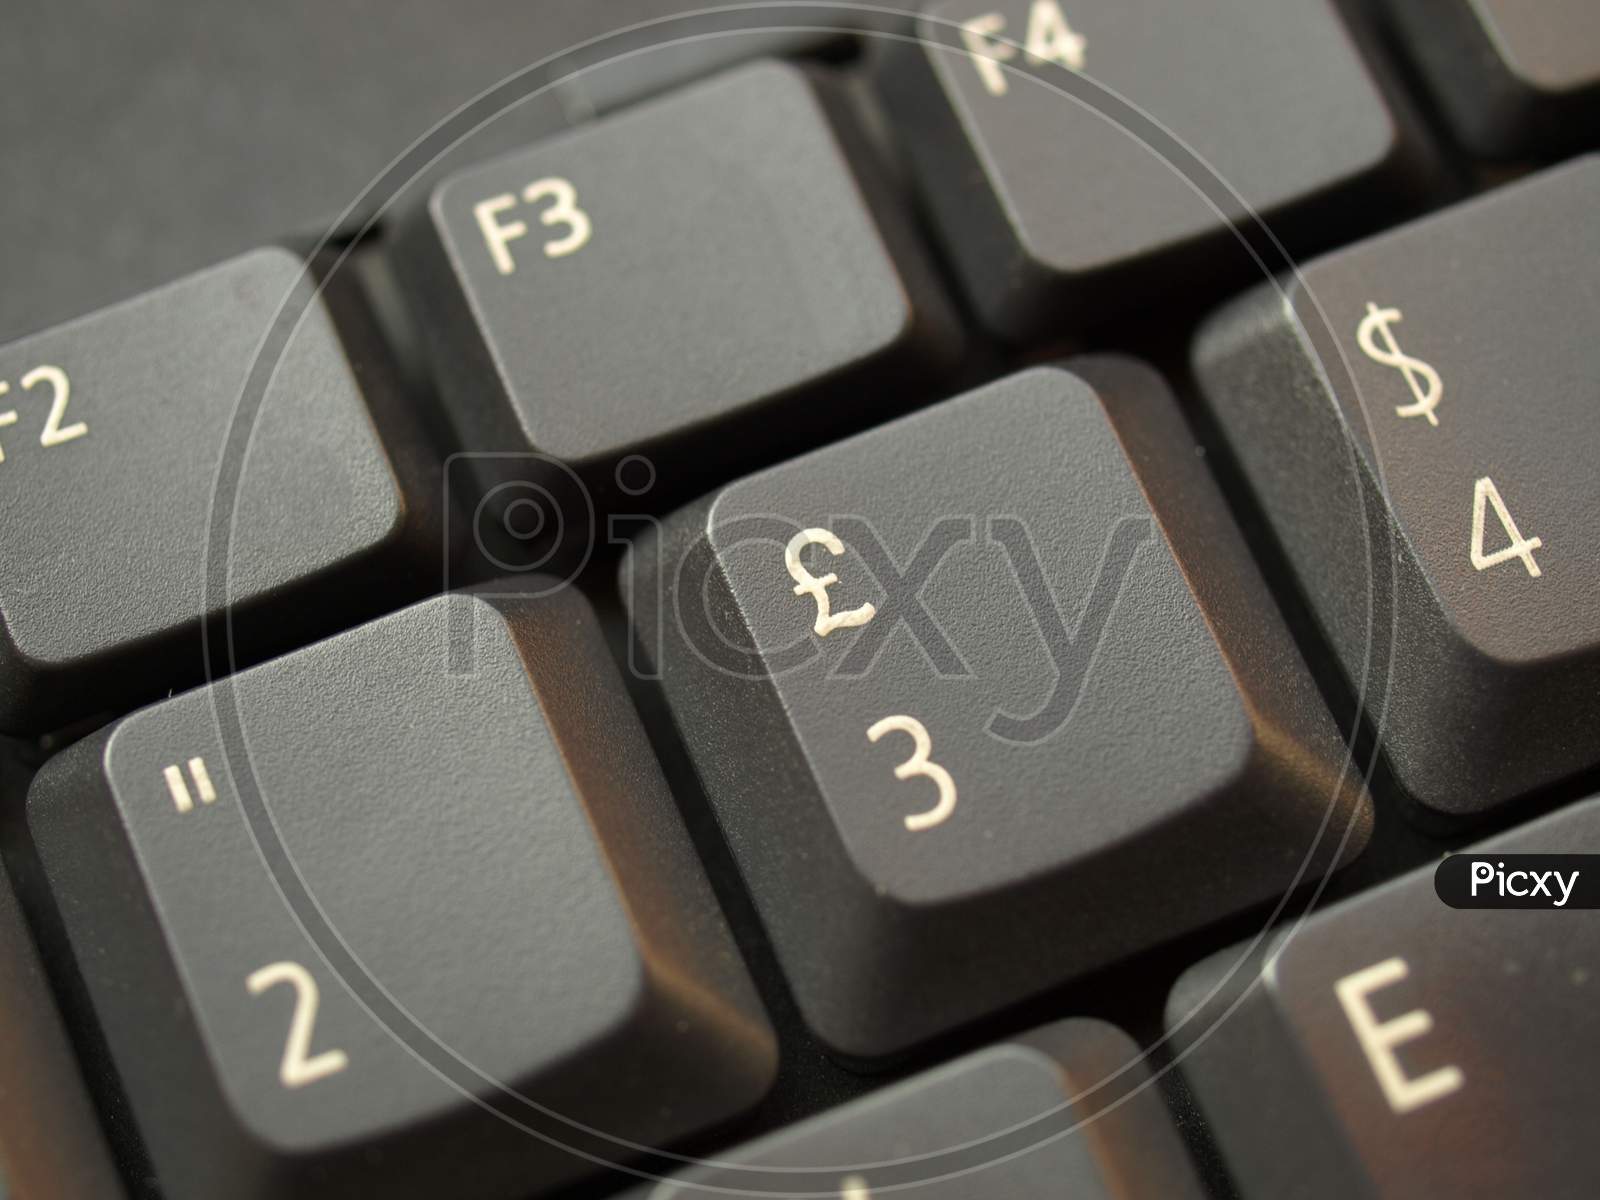 Computer Keyboard Keys